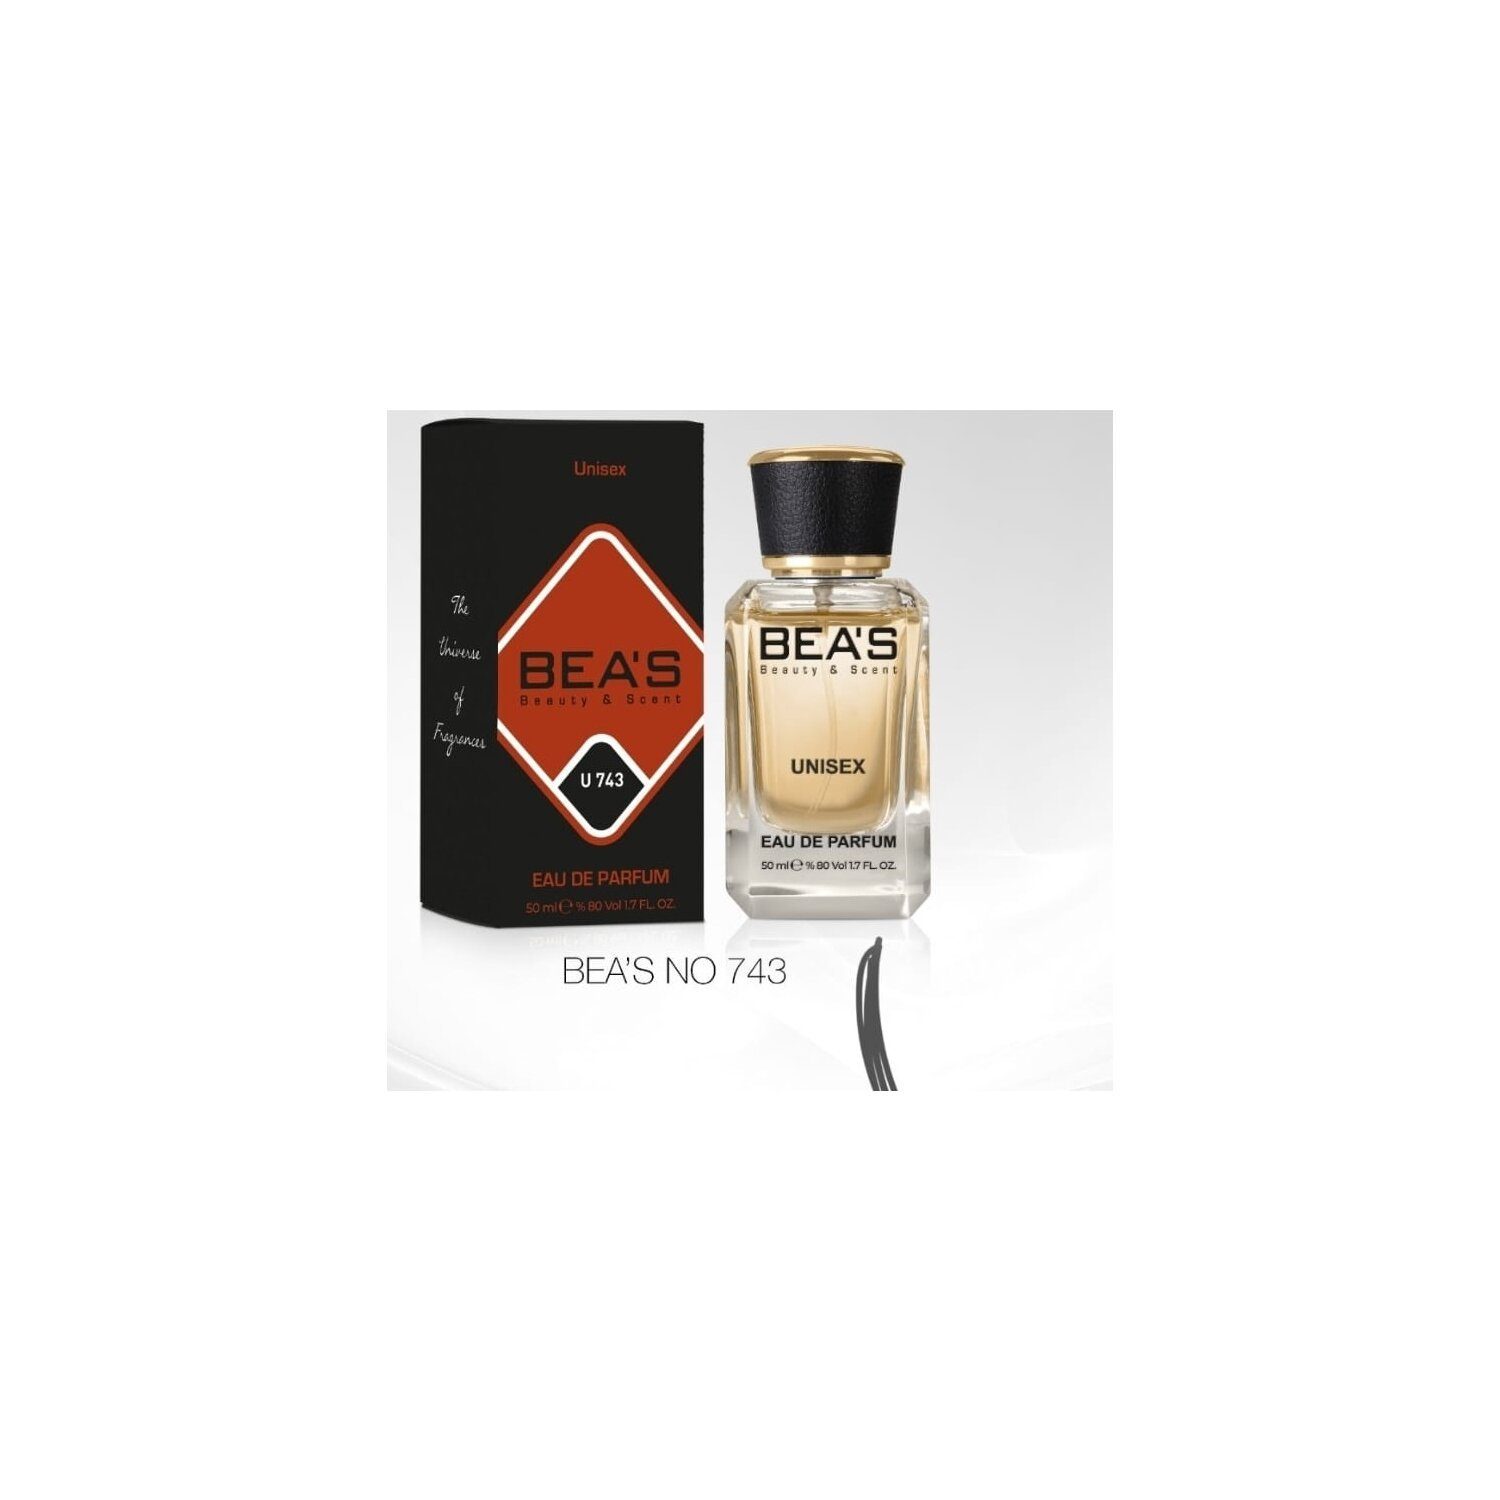 De 50 Eau Parfum Beauty U Parfum de Eau ml Scent BEA'S Nomade Ombre & 743 holzig